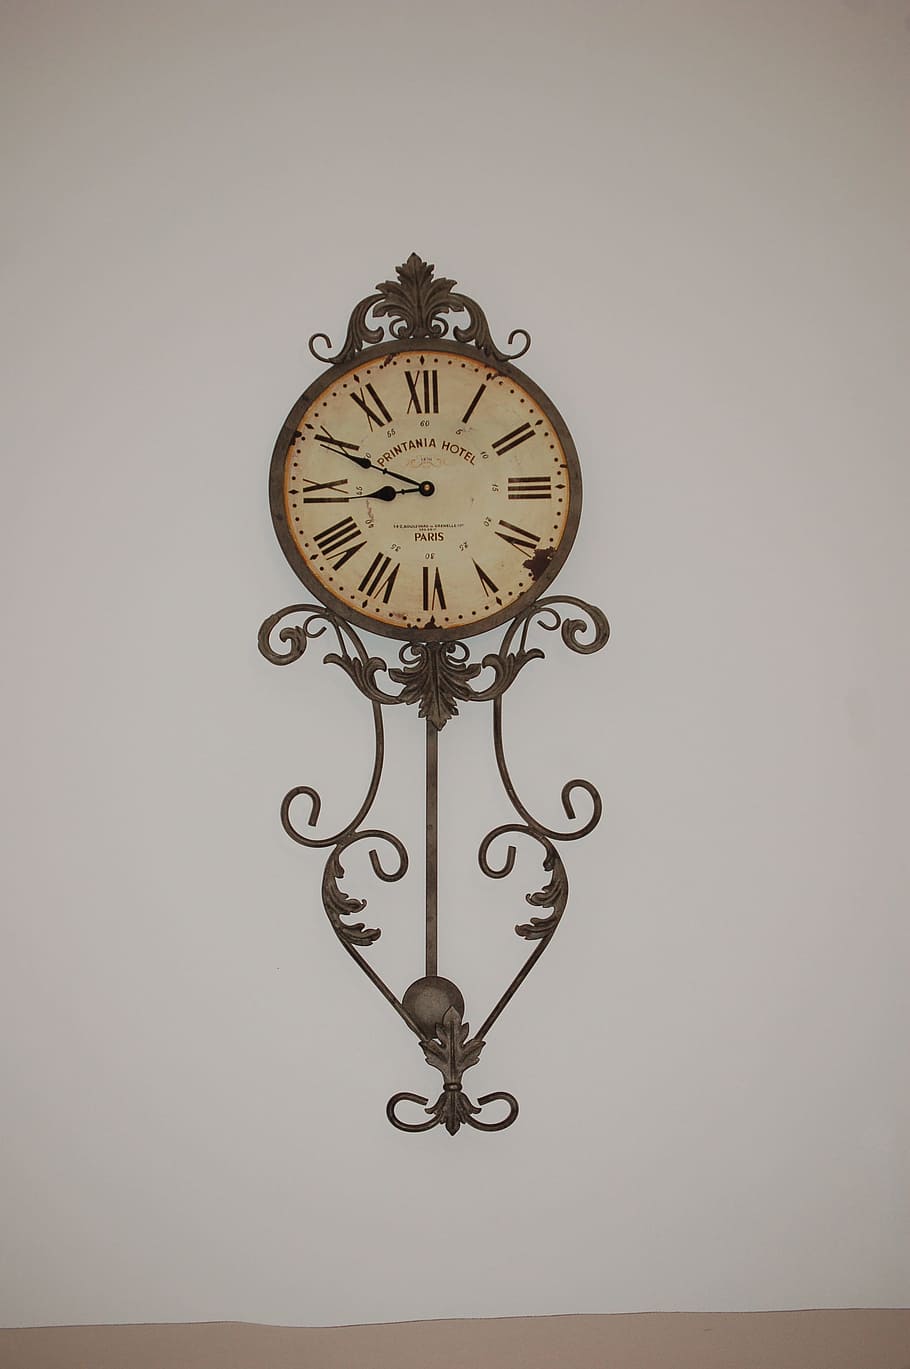 Relógio de parede, Tempo, relógio, parede, à moda antiga, velho, antiguidade, relógio Face, retro Estilo, ponteiro dos minutos